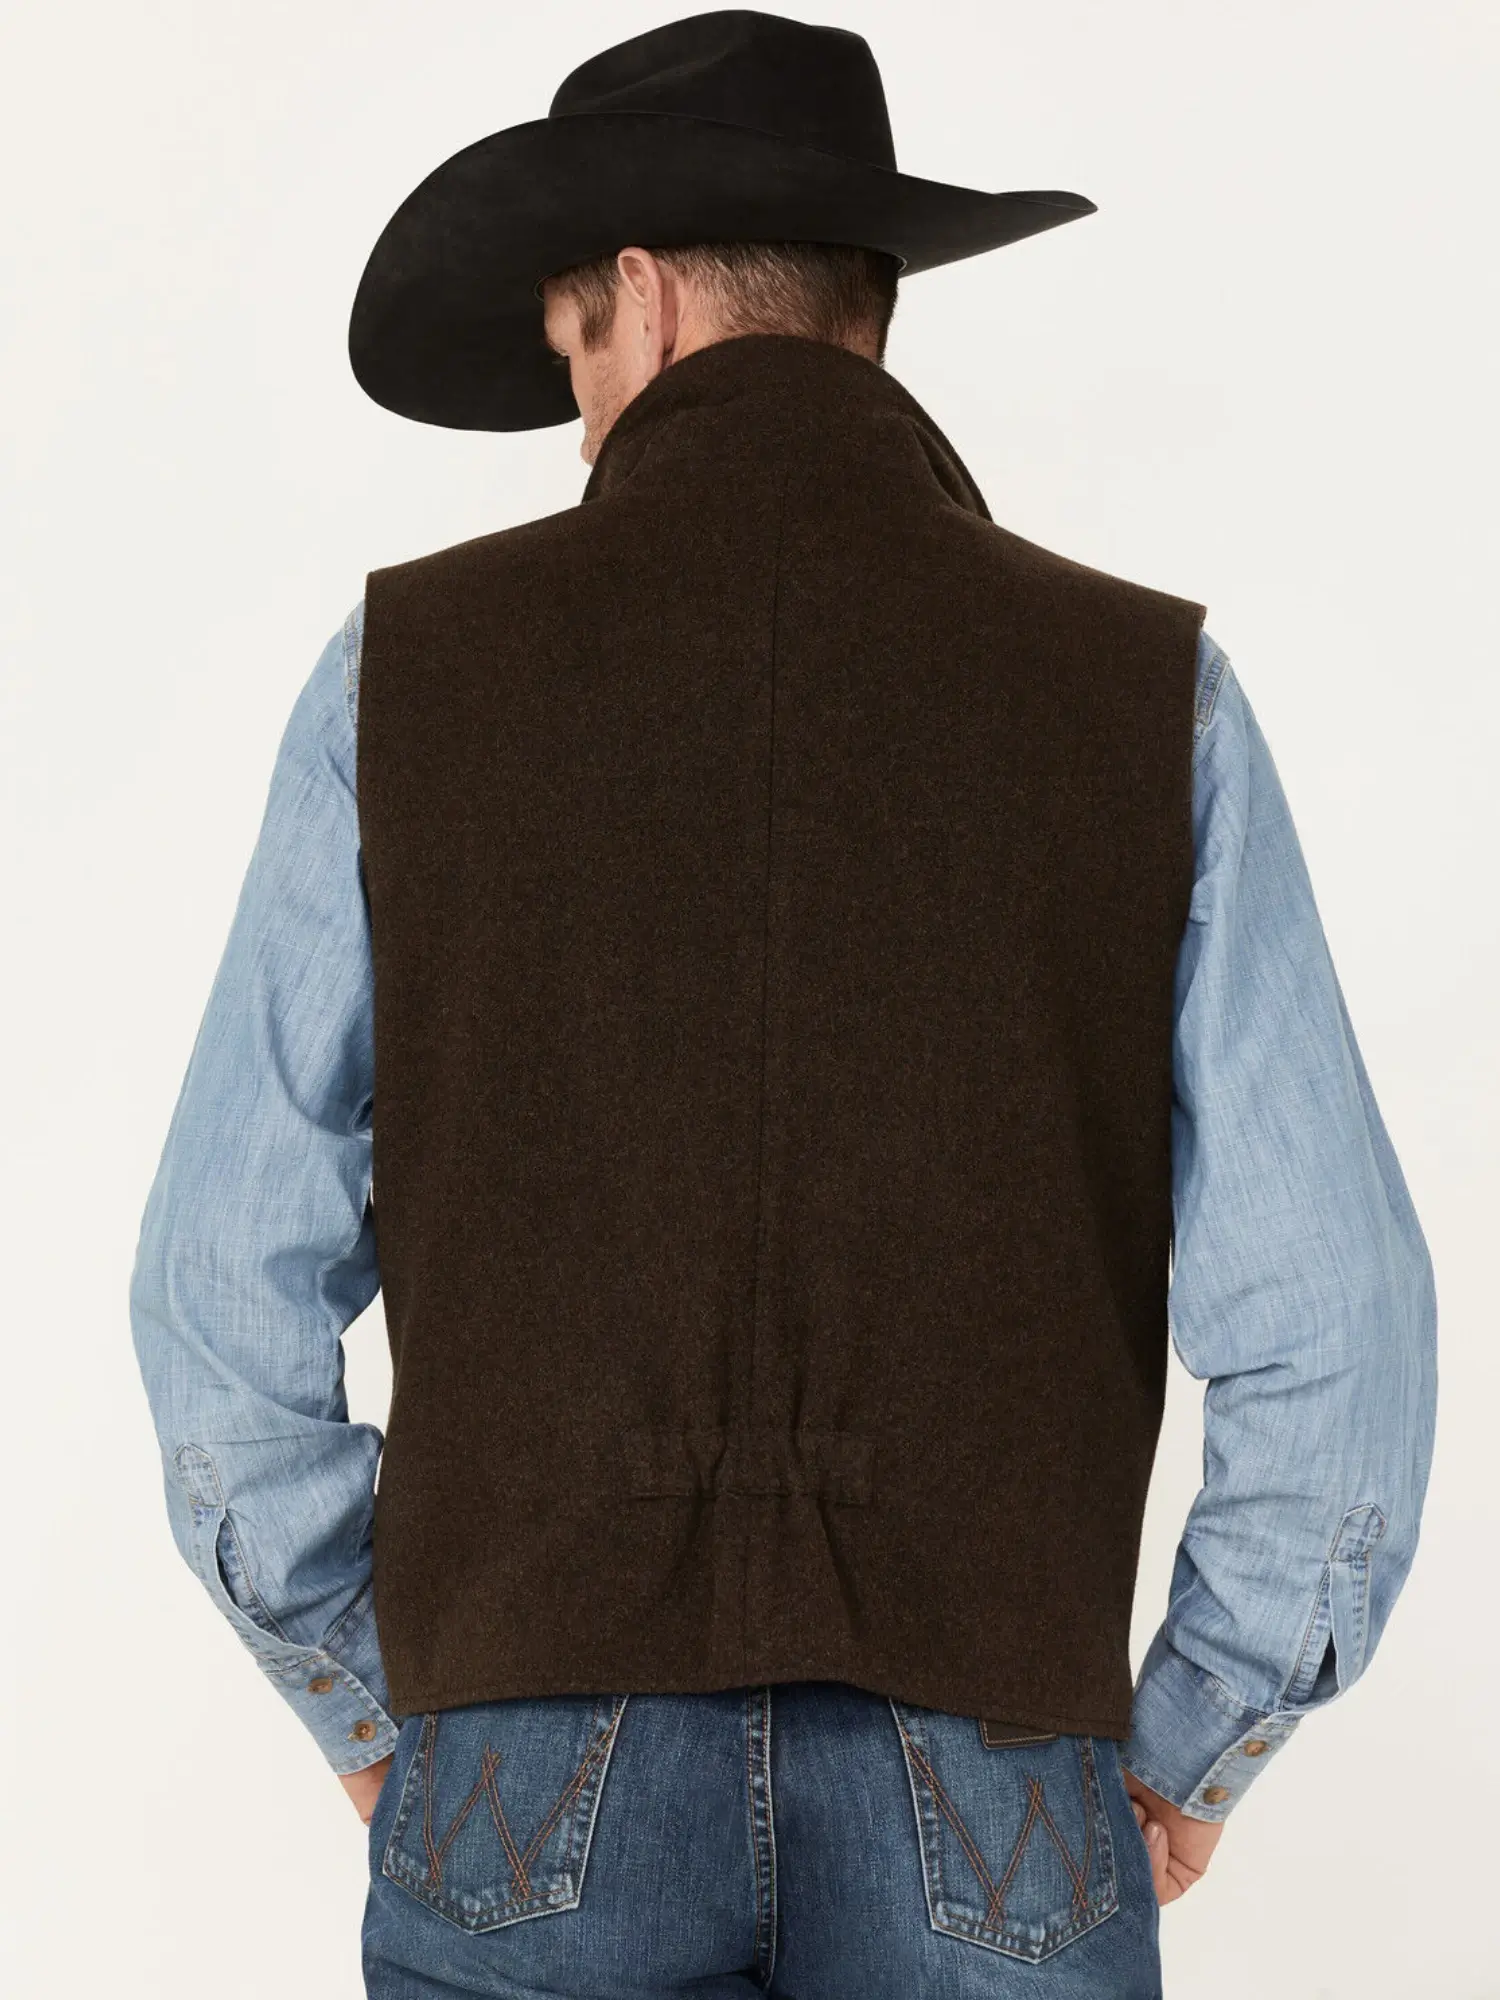 Men’s Brown Wool Montana Vest